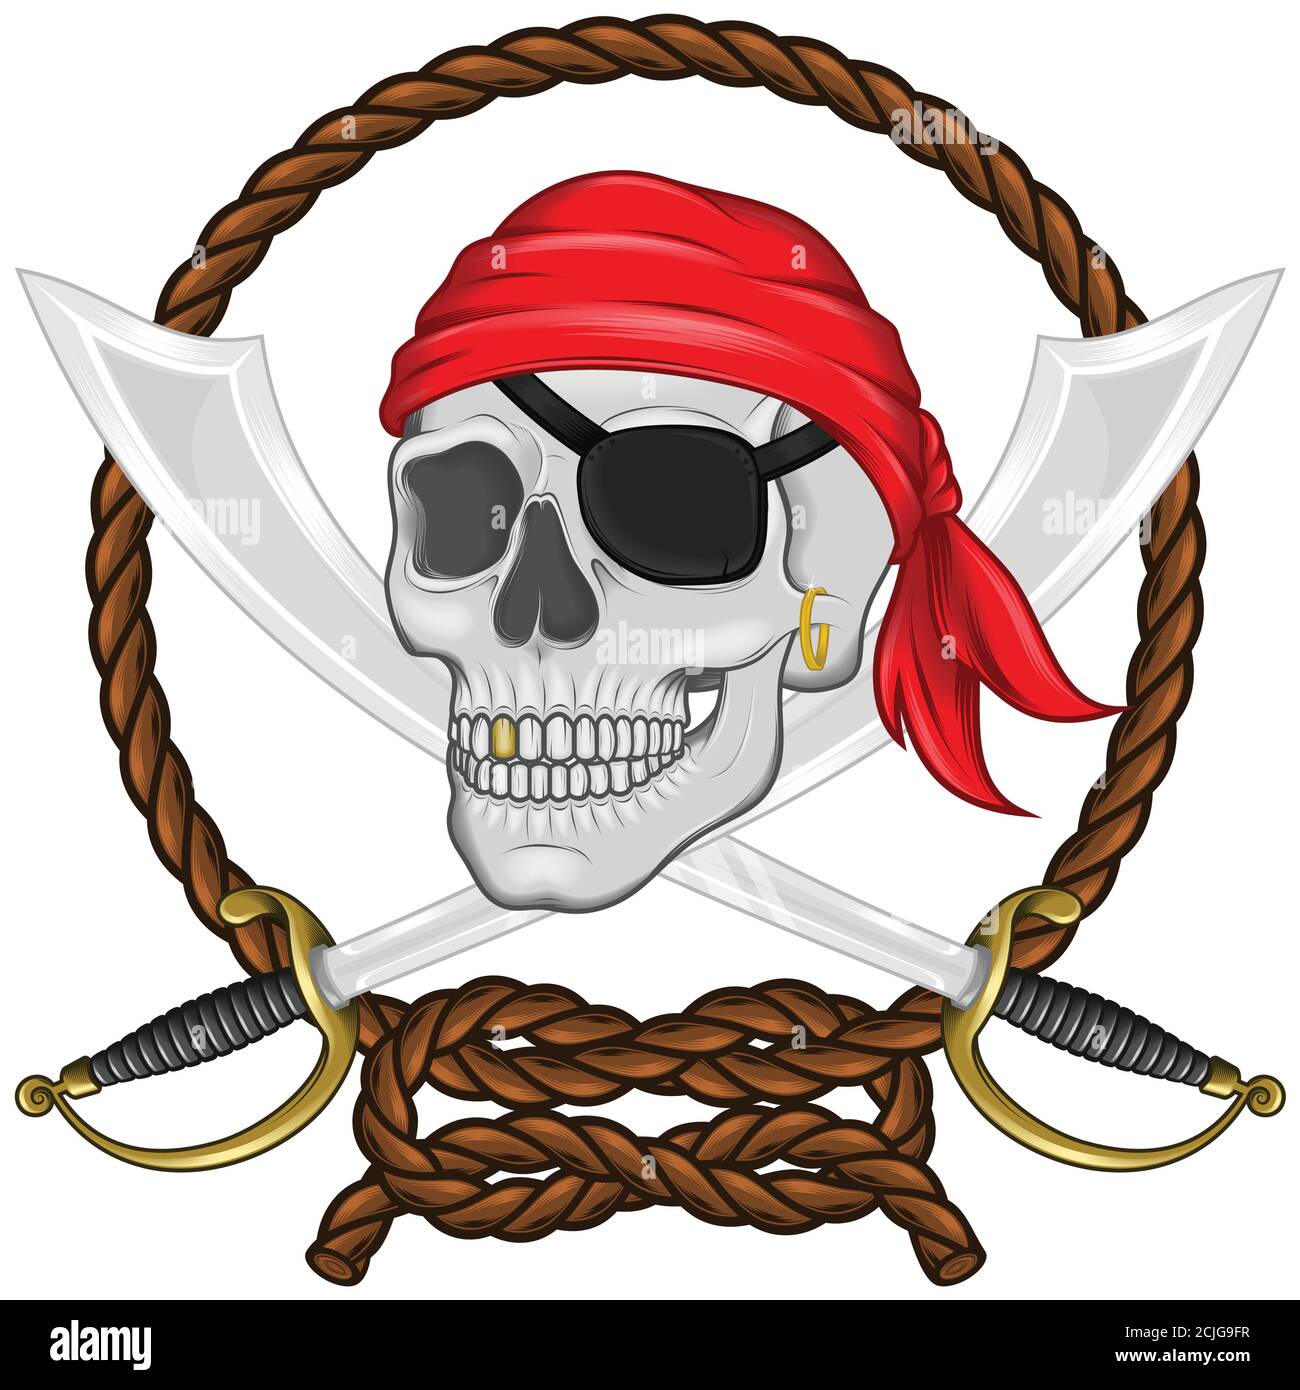 Illustration vectorielle d'un crâne pirate avec deux épées entourées d'une corde entrelacée, avec effet dégradé, le tout sur fond blanc Illustration de Vecteur